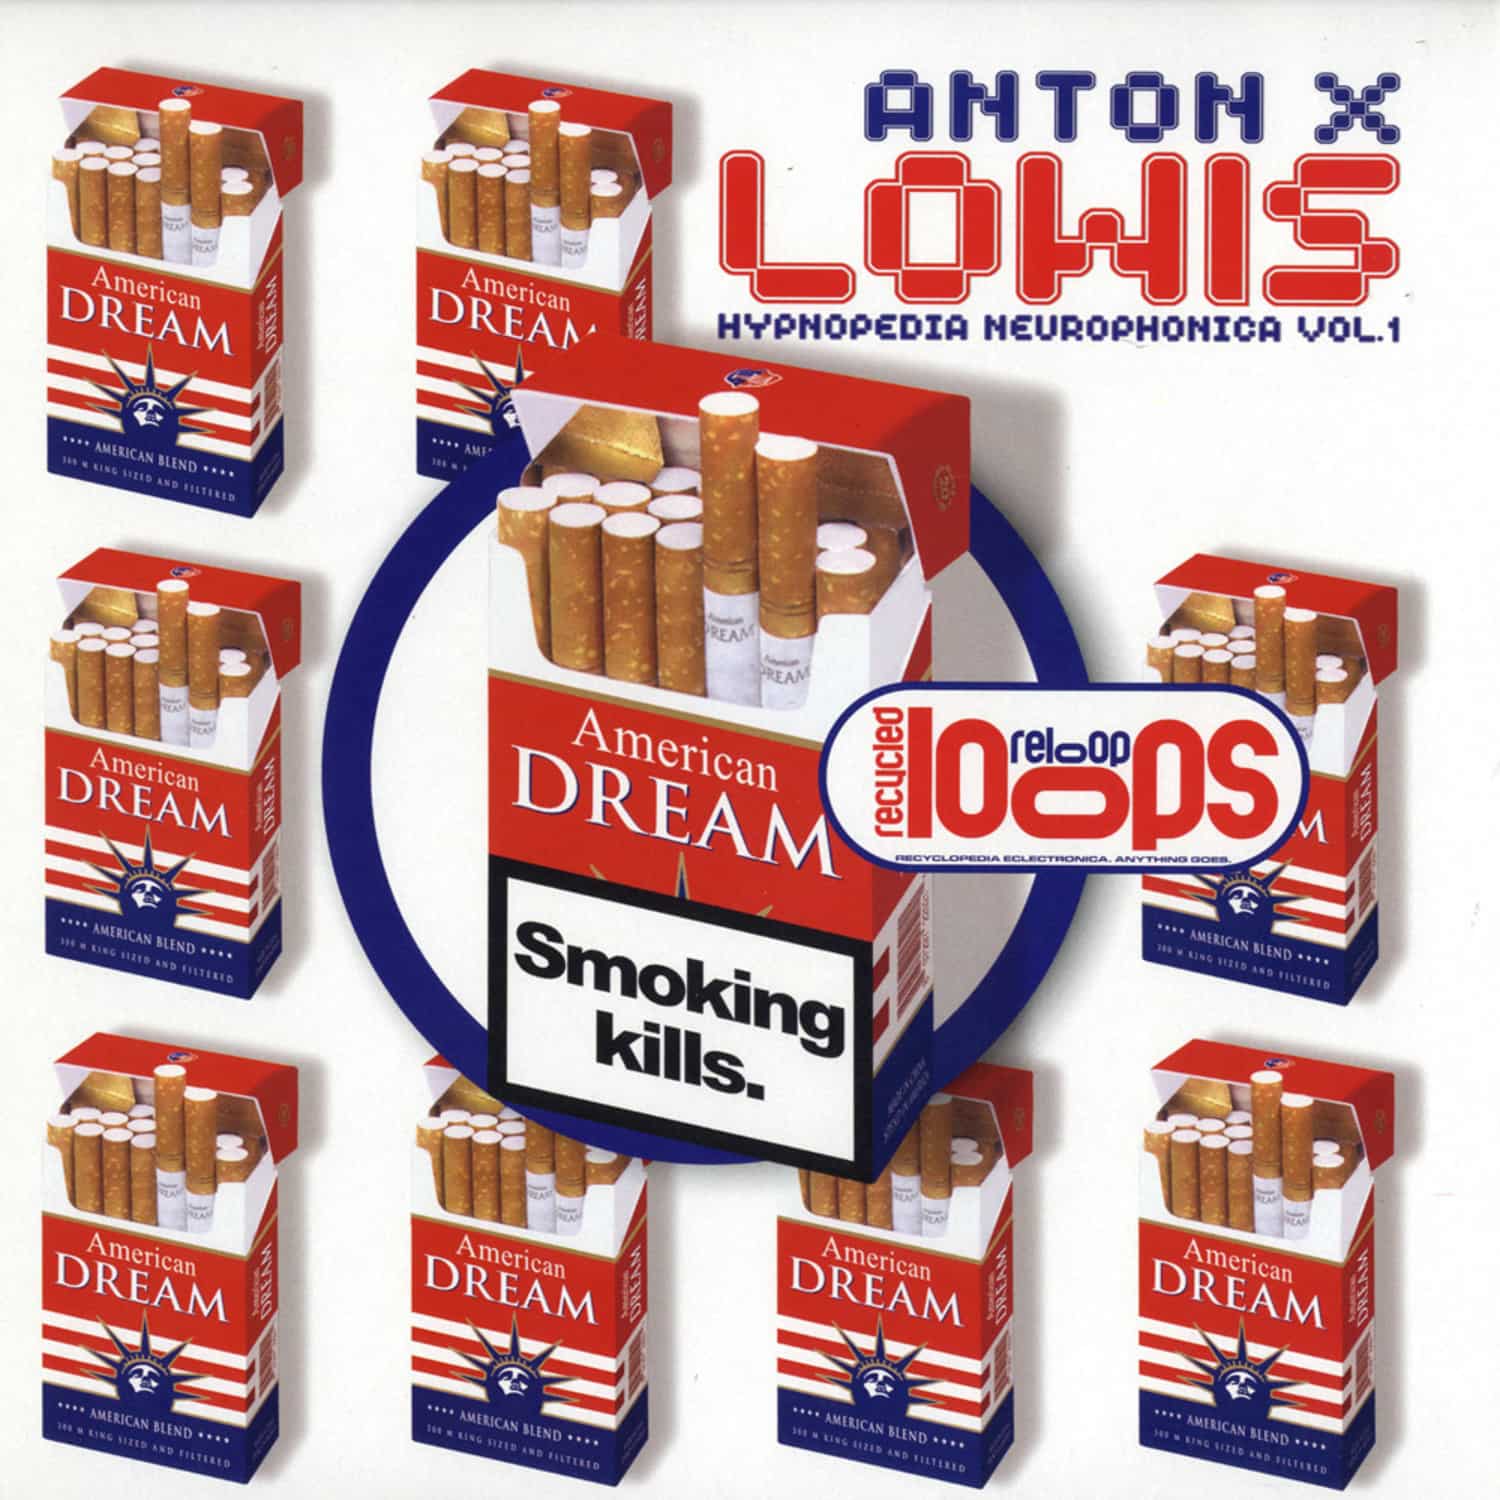 Anton-X - LOWIS EP